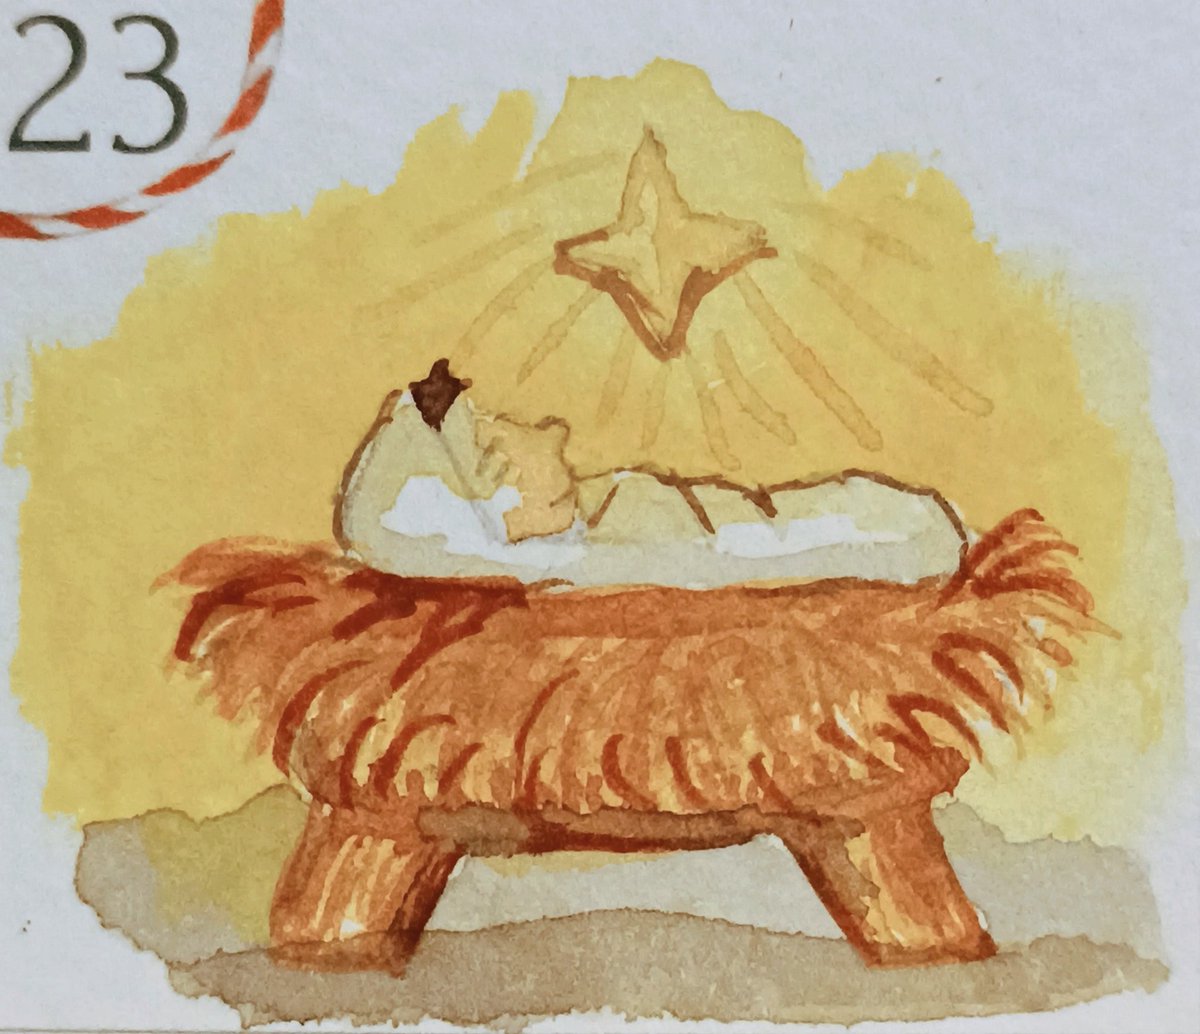 Day 23: Baby Jesus in his manger

De Winton Watercolour Advent Calendar

@dewintonpaperco
#dewintonpaperco #dewintonadvent
#watercolours
#painting #art #artmakesmehappy #watercolors #watercolourpainting #advent #adventcalendar #christmas #festive  #babyjesus #manger #Day23